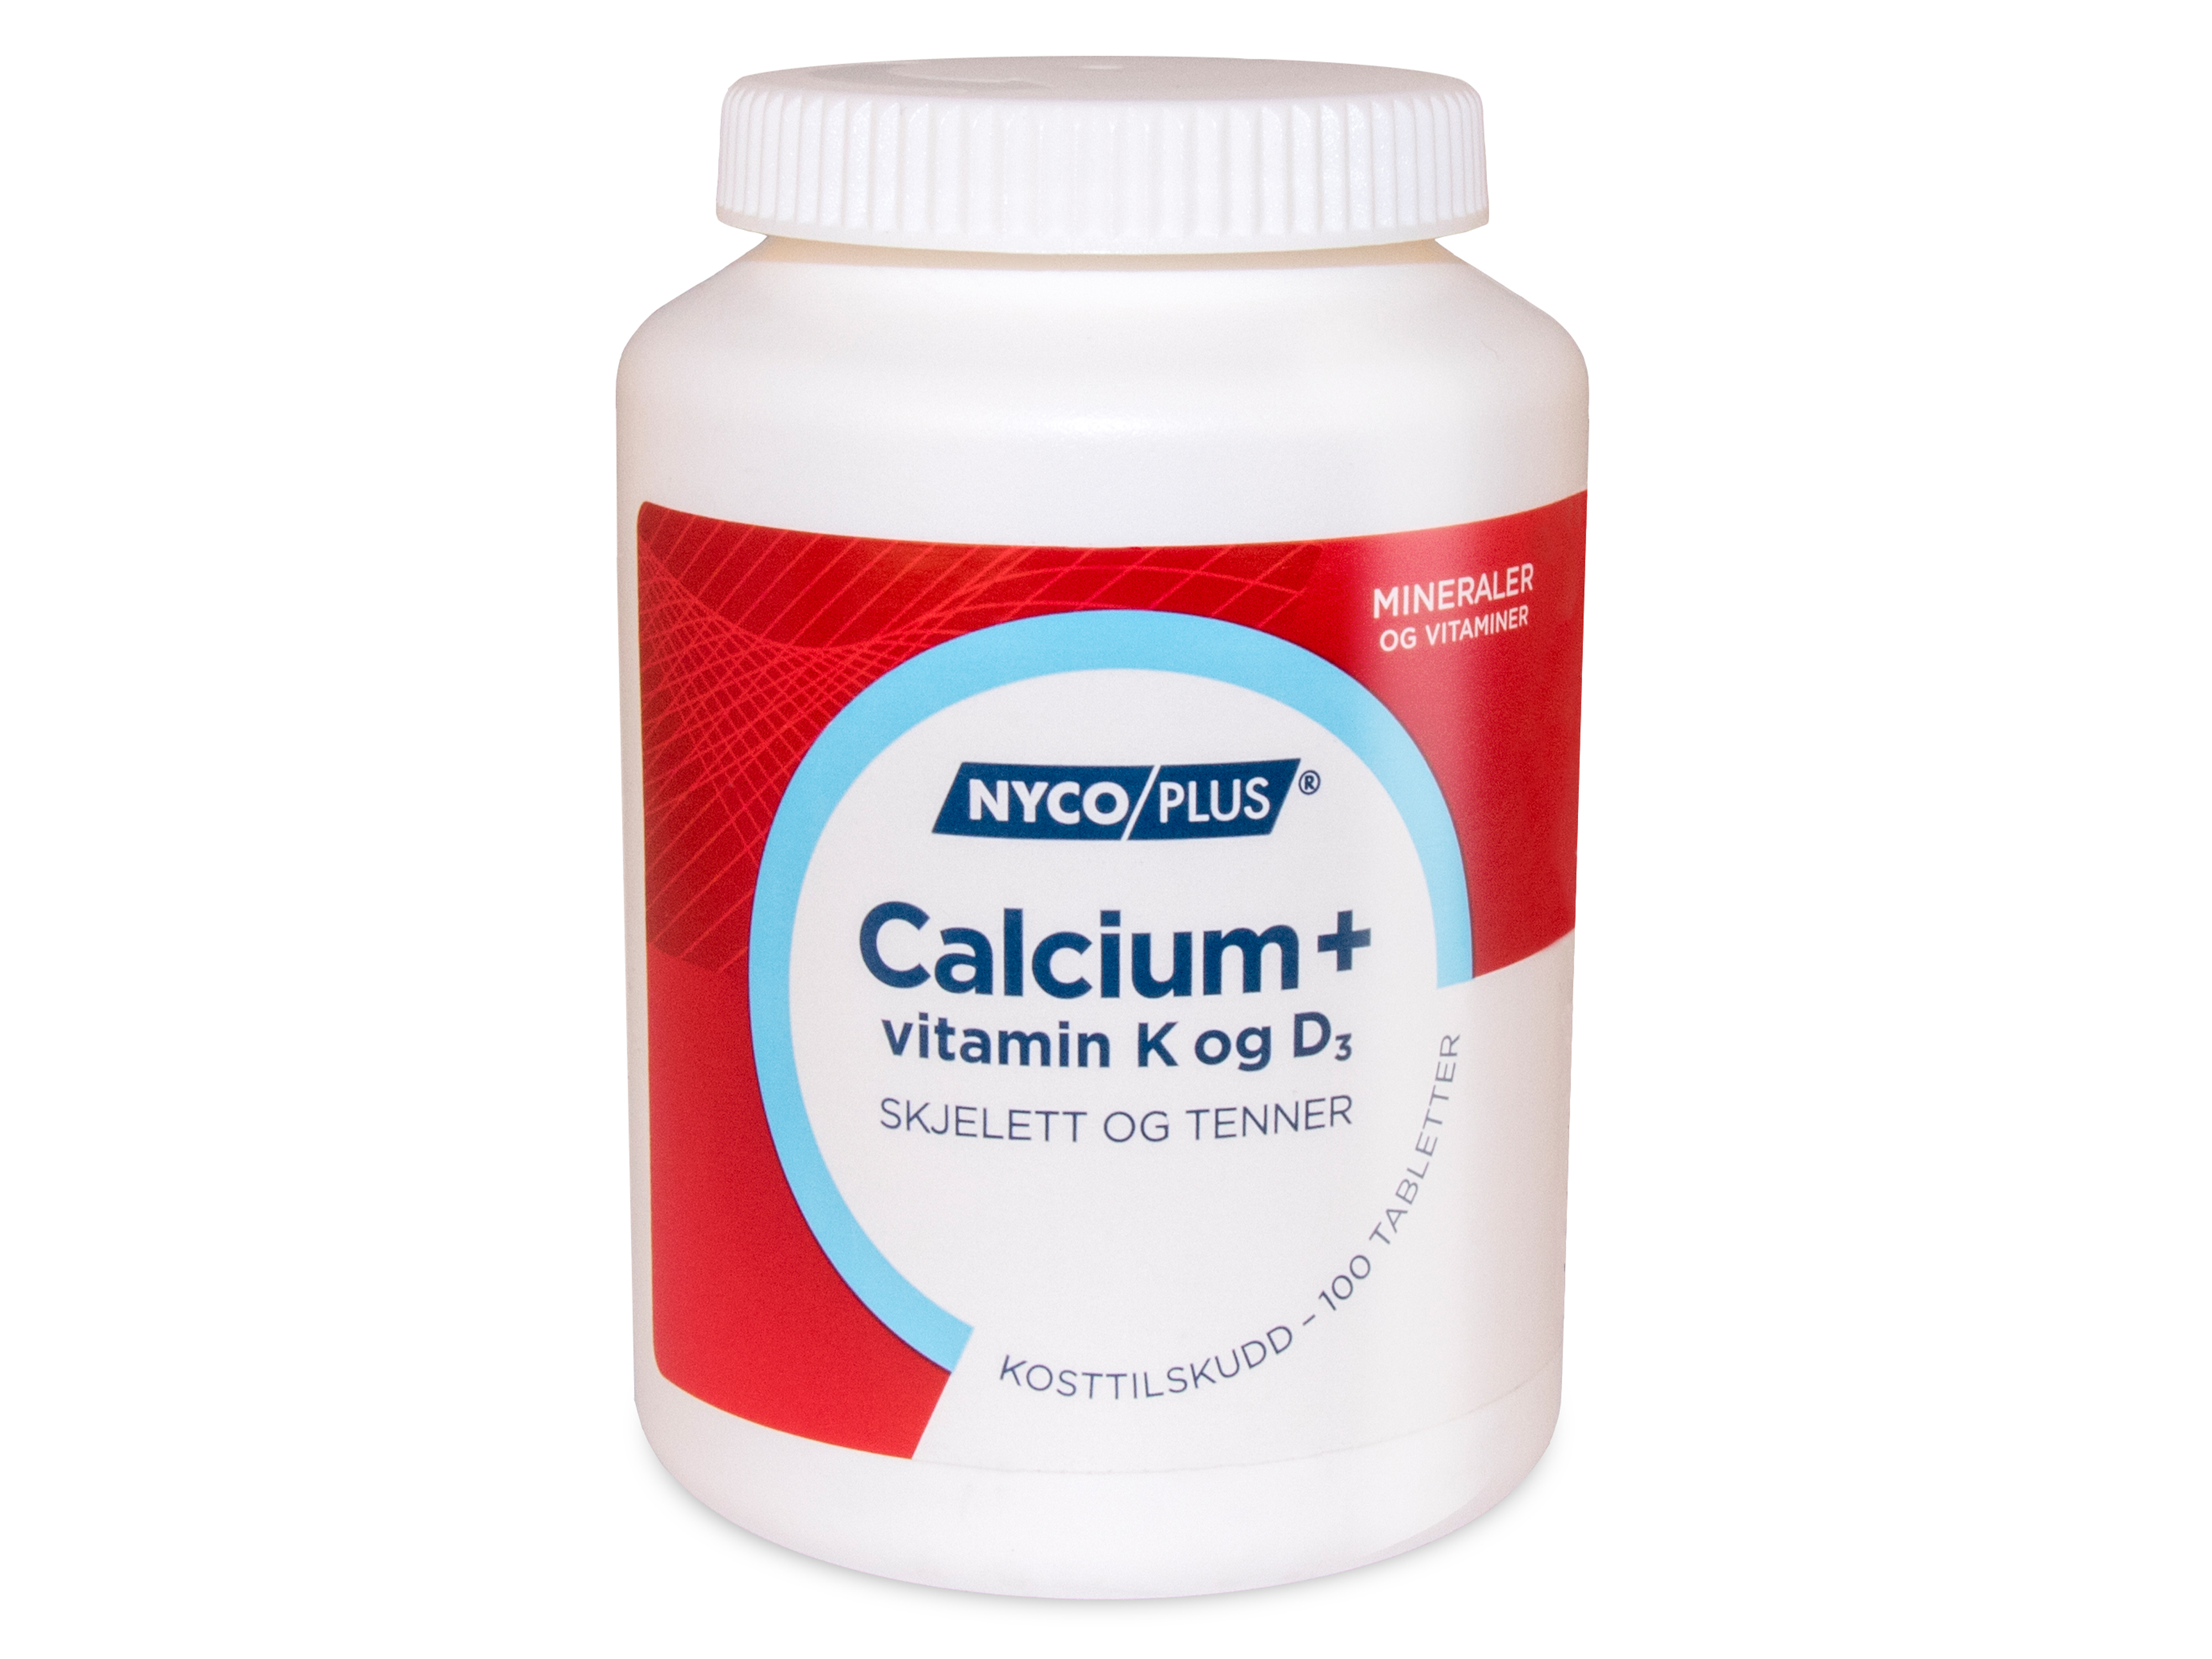 Calcium + vitamin K og D3, 100 tabletter